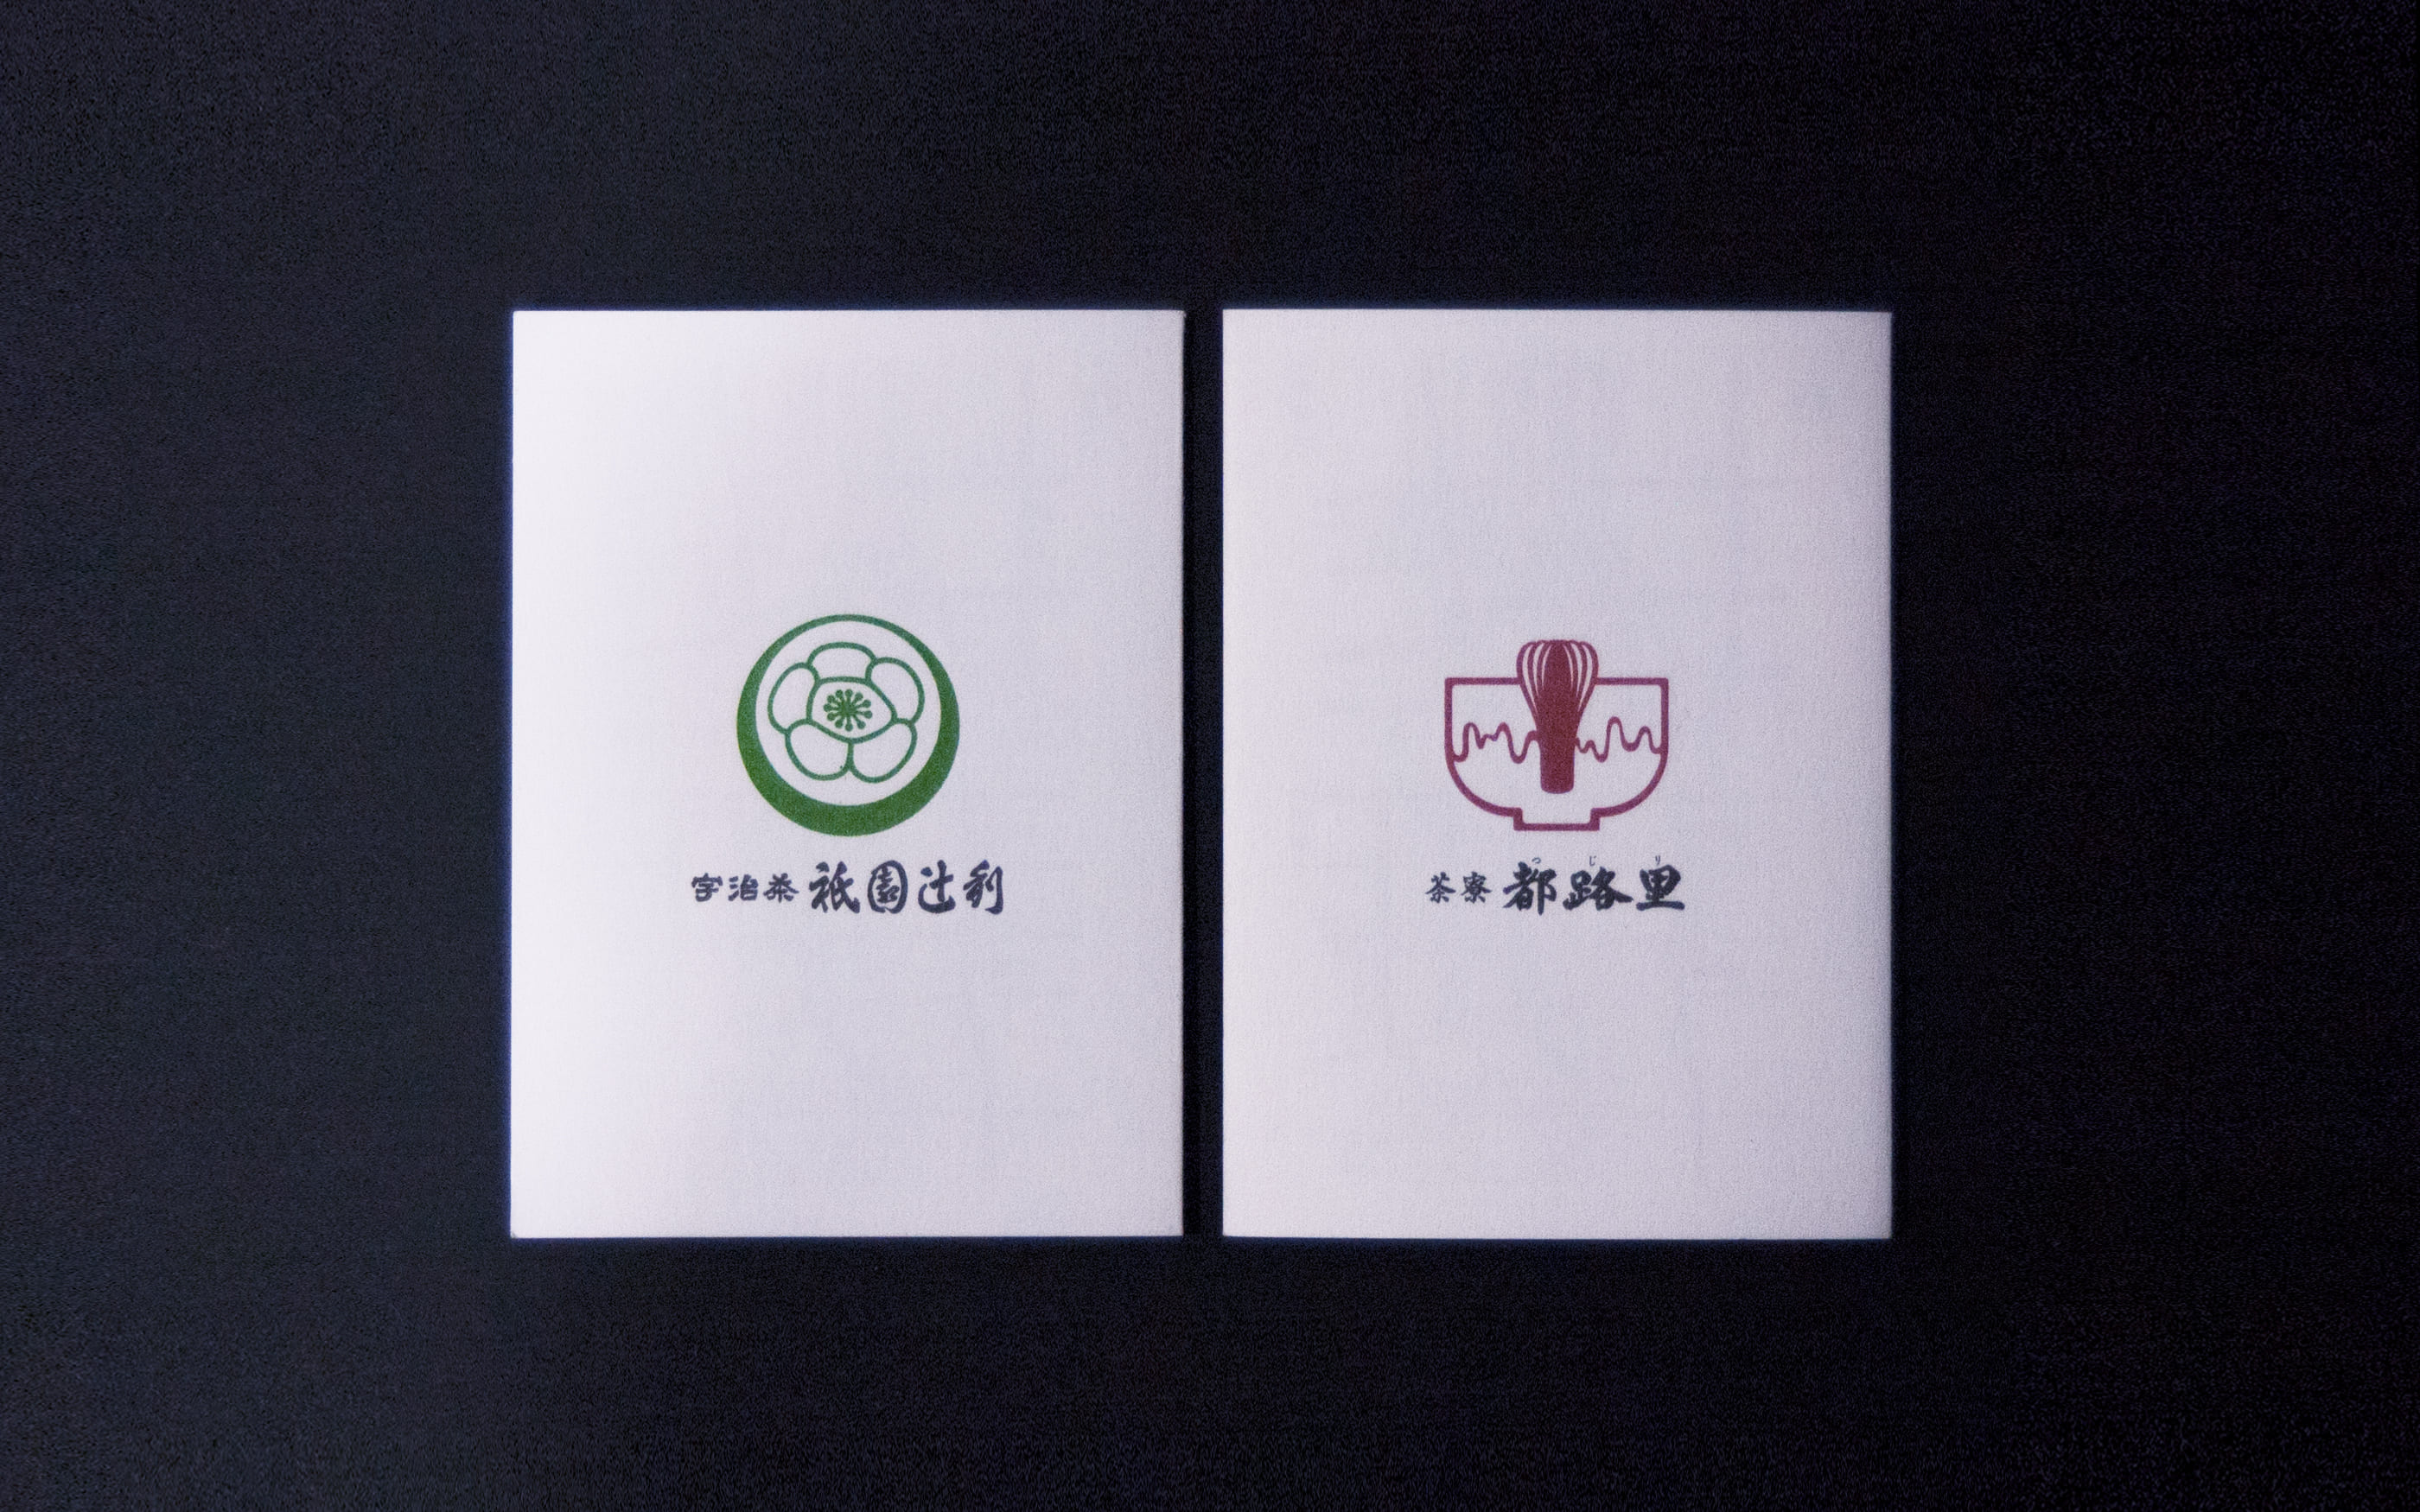 祇園辻利 ショップカード, giontsujiri shopcard